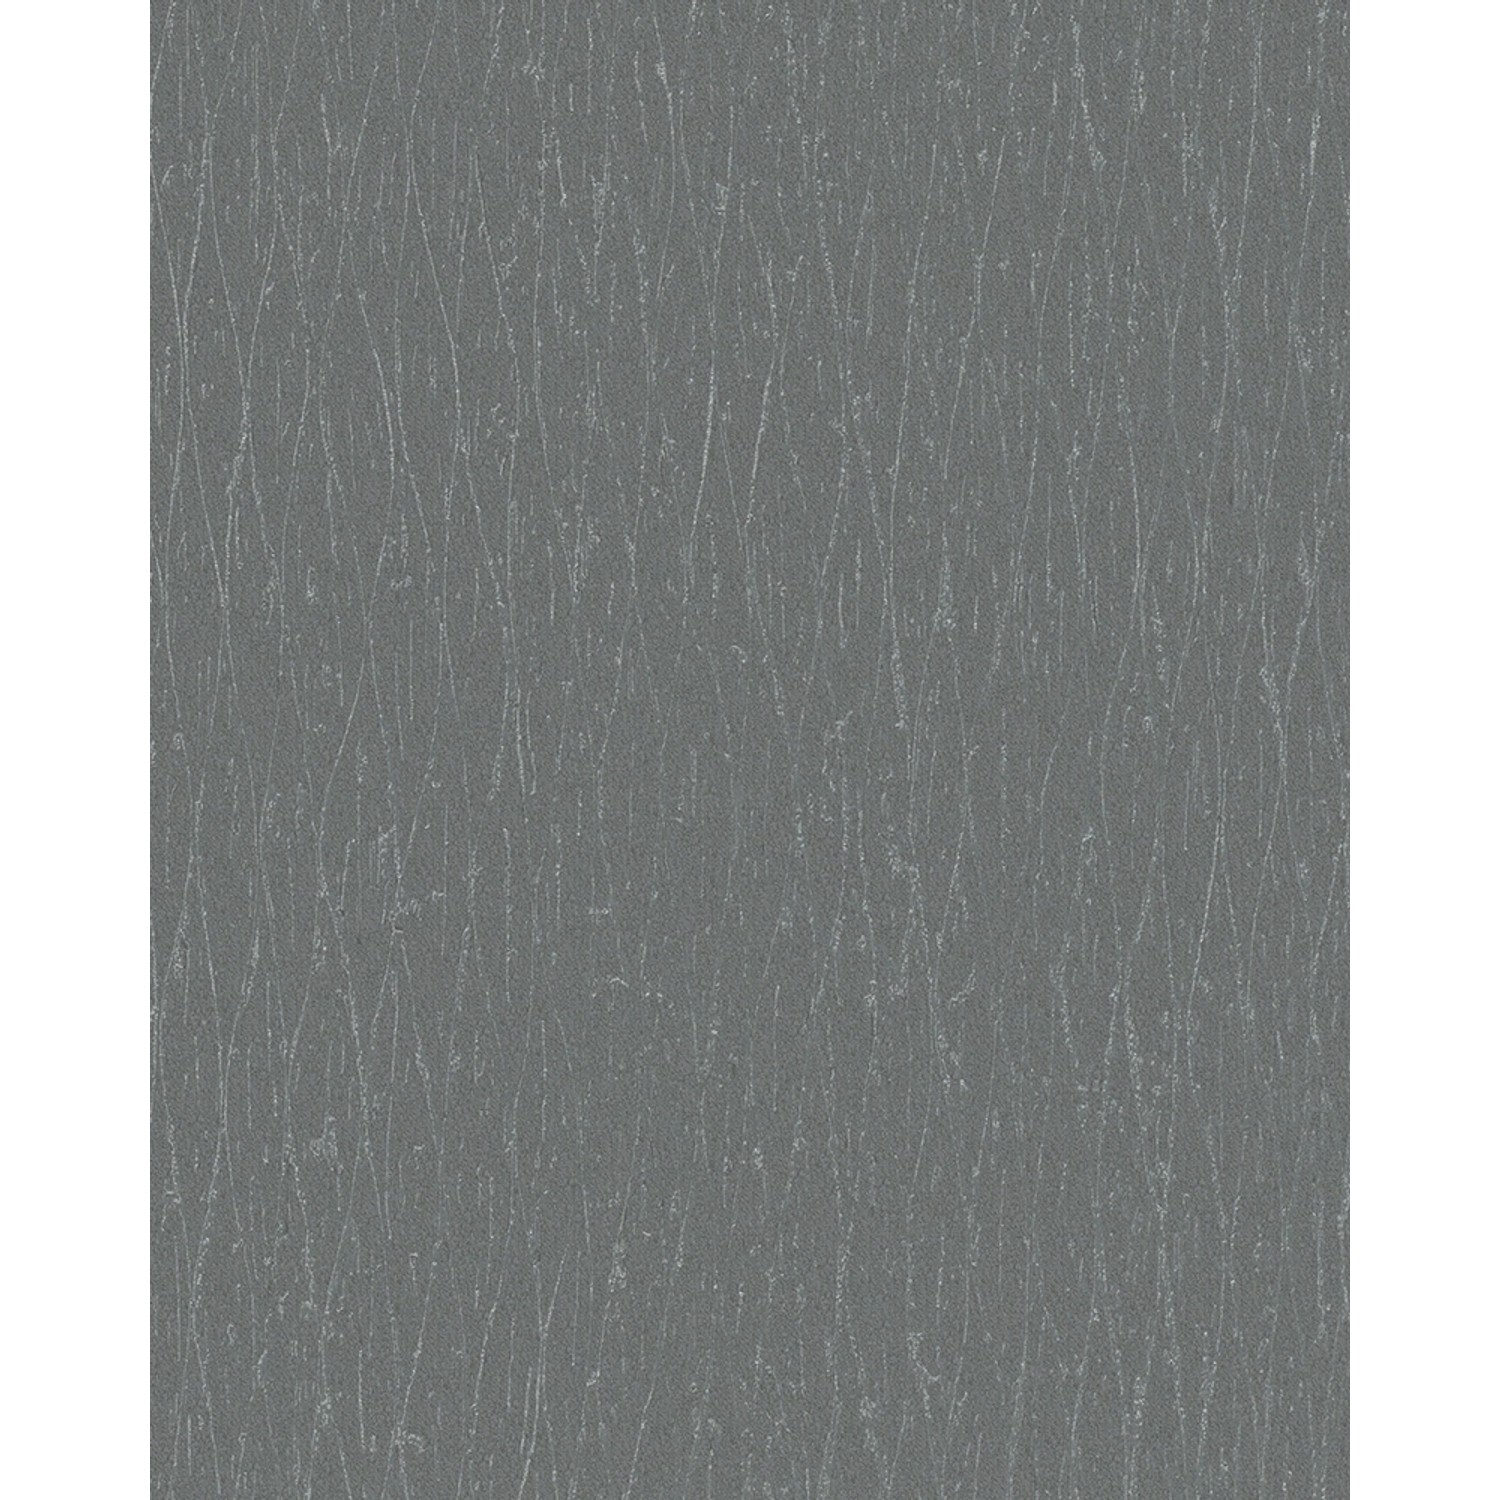 Marburg Vliestapete Struktur Ikatiert Anthrazit-Silber 10,05 m x 0,53 m FSC® von Marburg